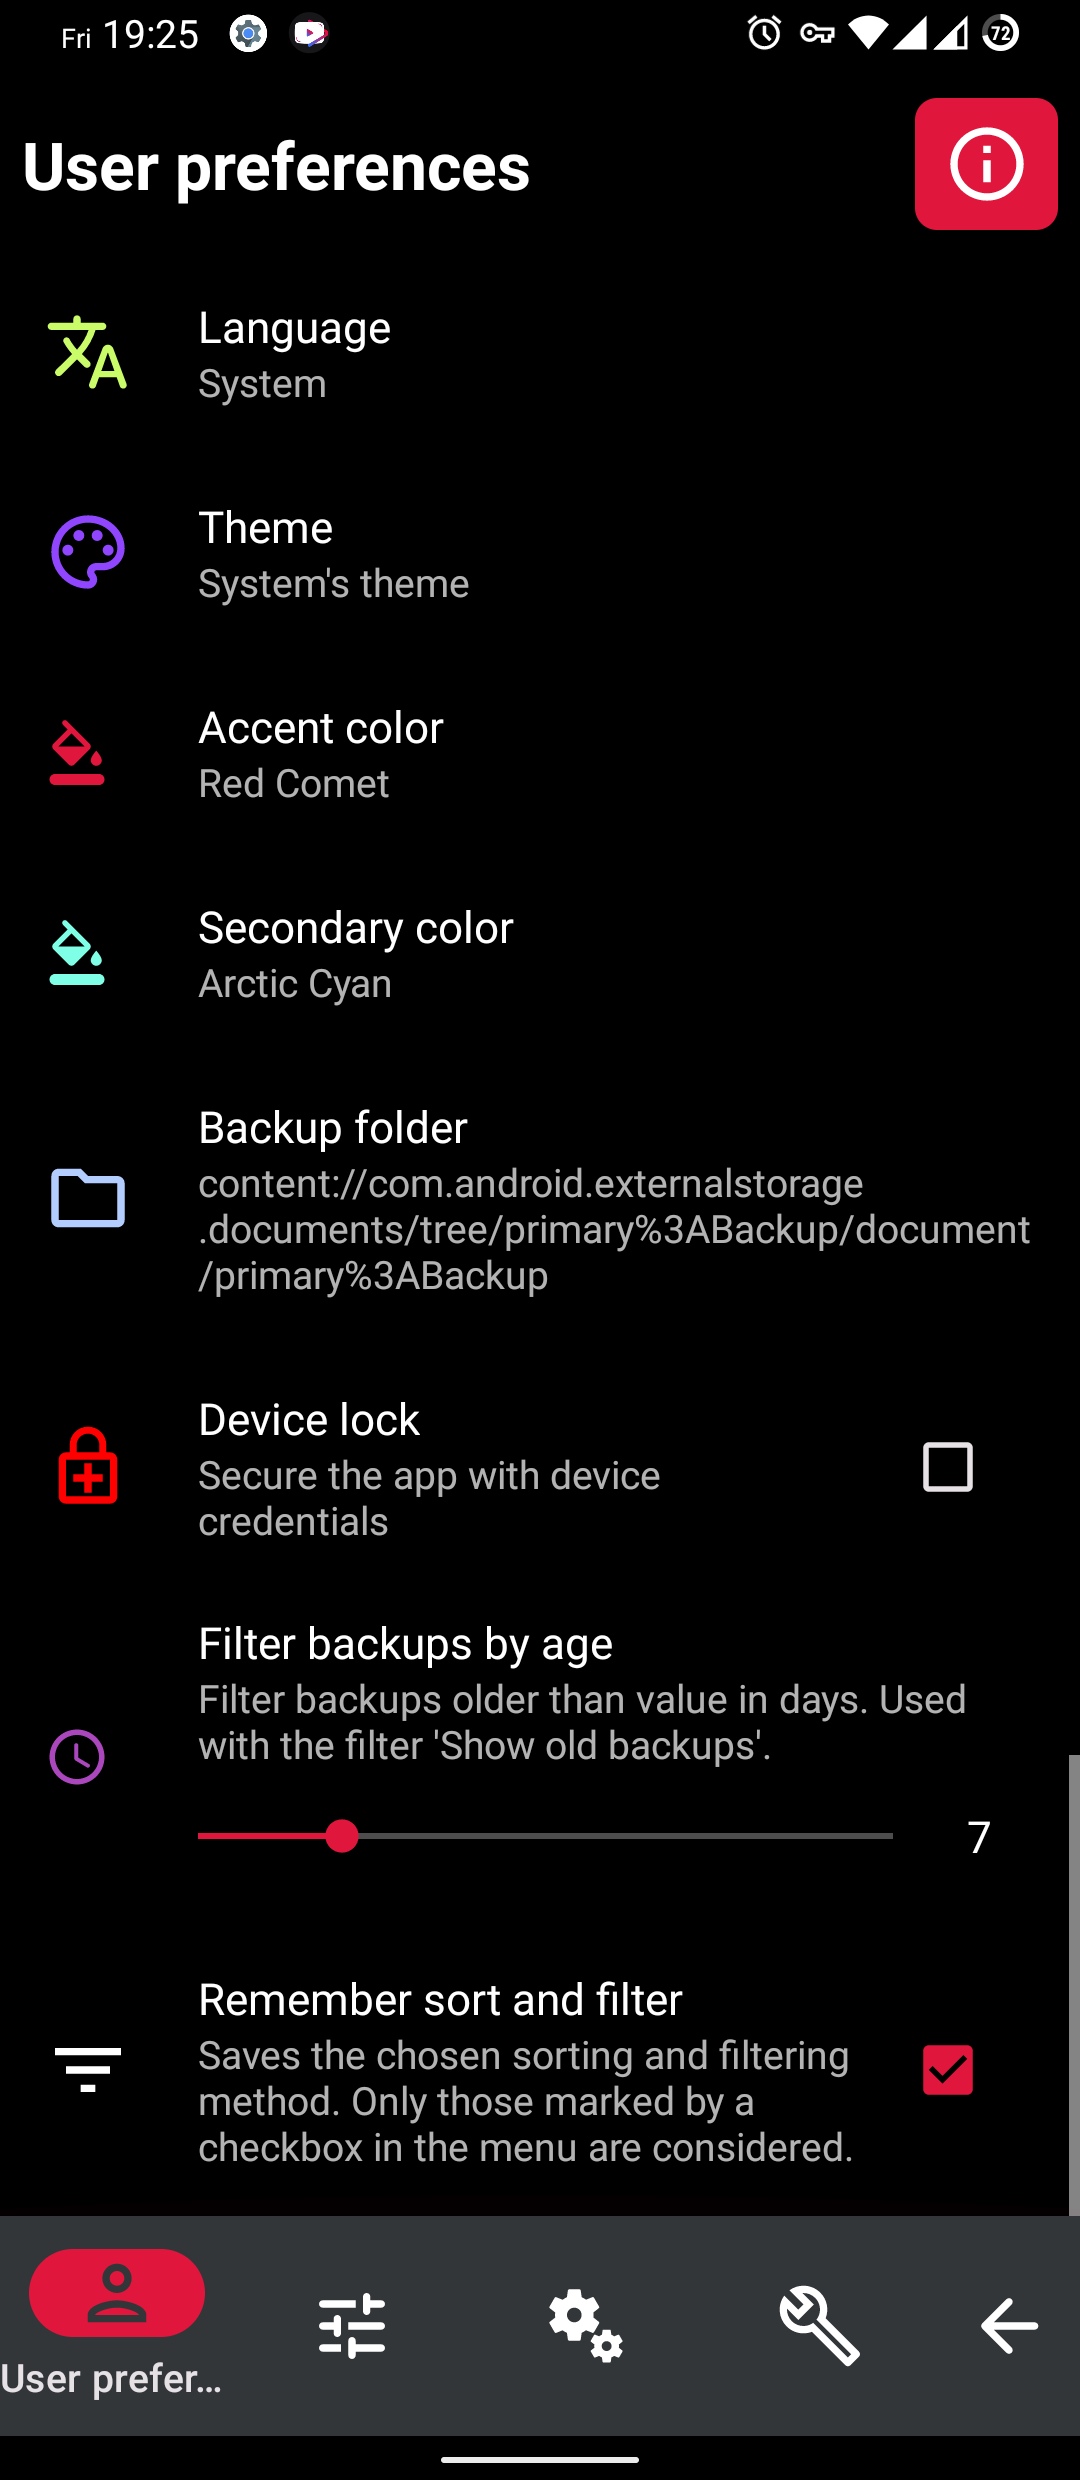 oandbackupx-syncthing-backup-android-phone-oabx-settings